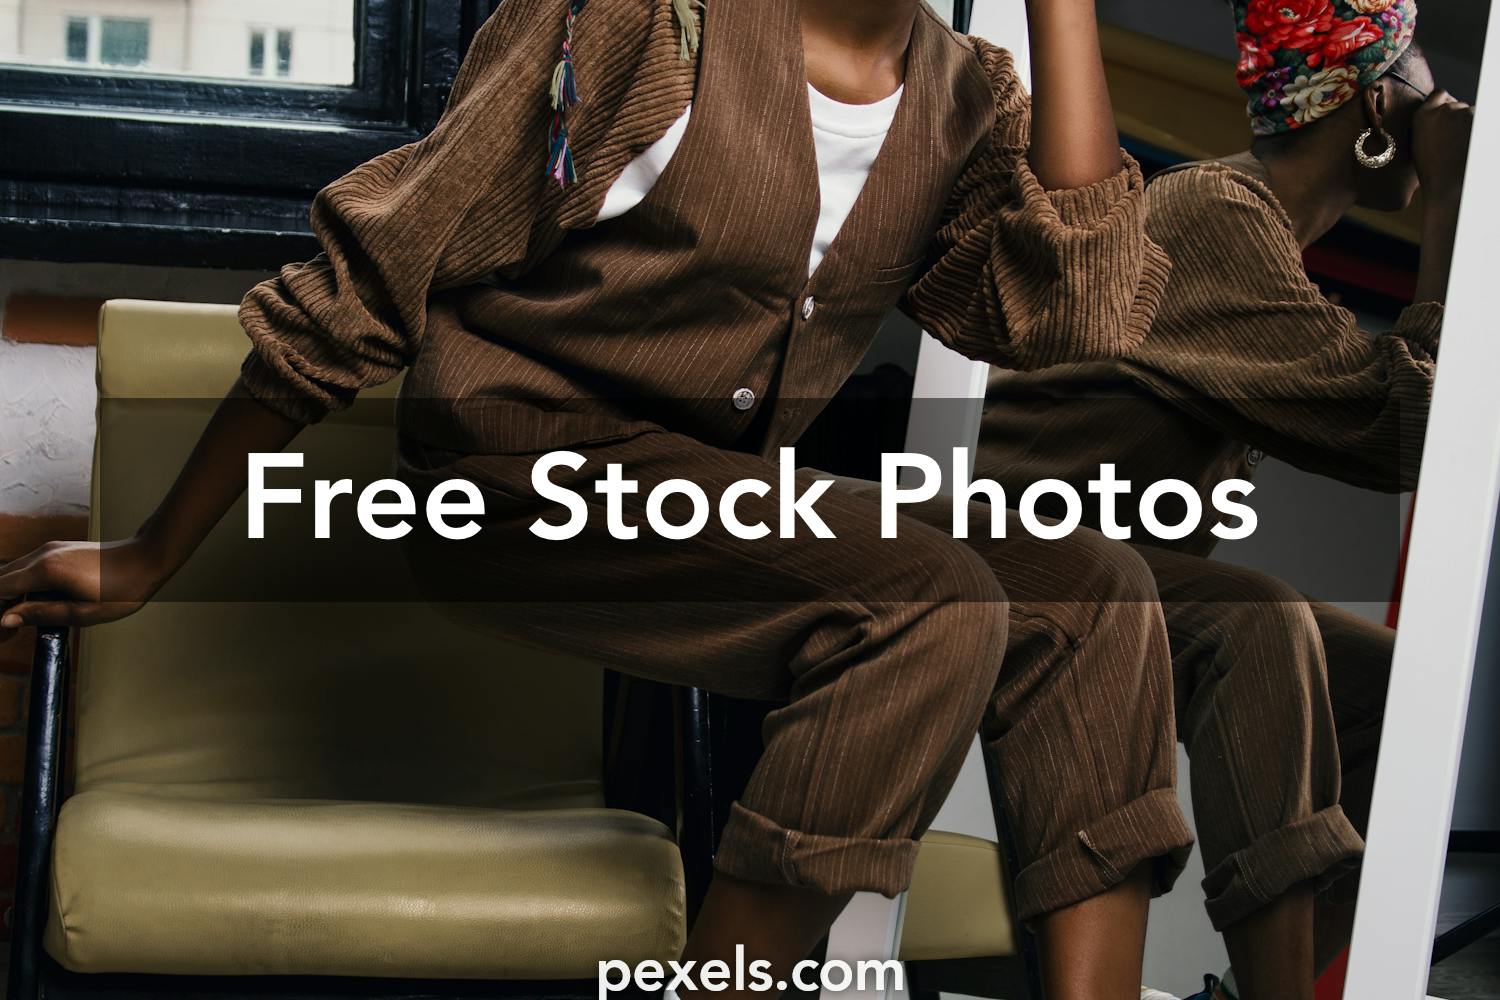 Engaging Balenciaga Photos Pexels · Free Stock Photos